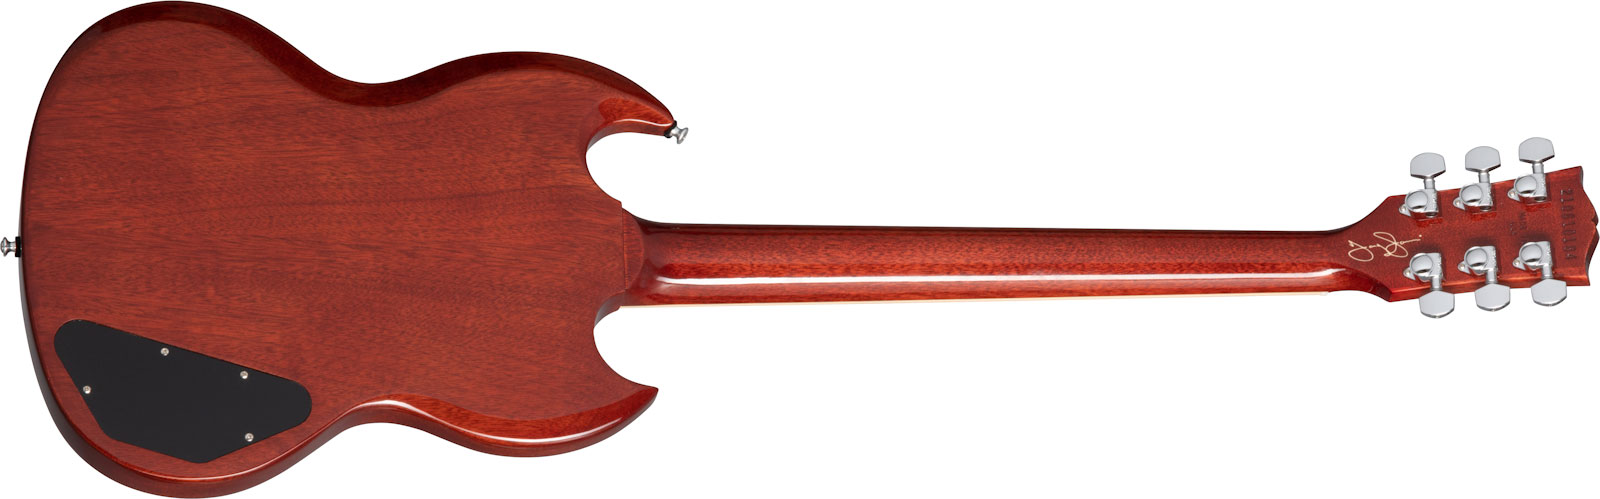 Gibson Sg Tony Iommi Special Lh Gaucher Signature 2p90 Ht Rw - Vintage Cherry - E-Gitarre für Linkshänder - Variation 1